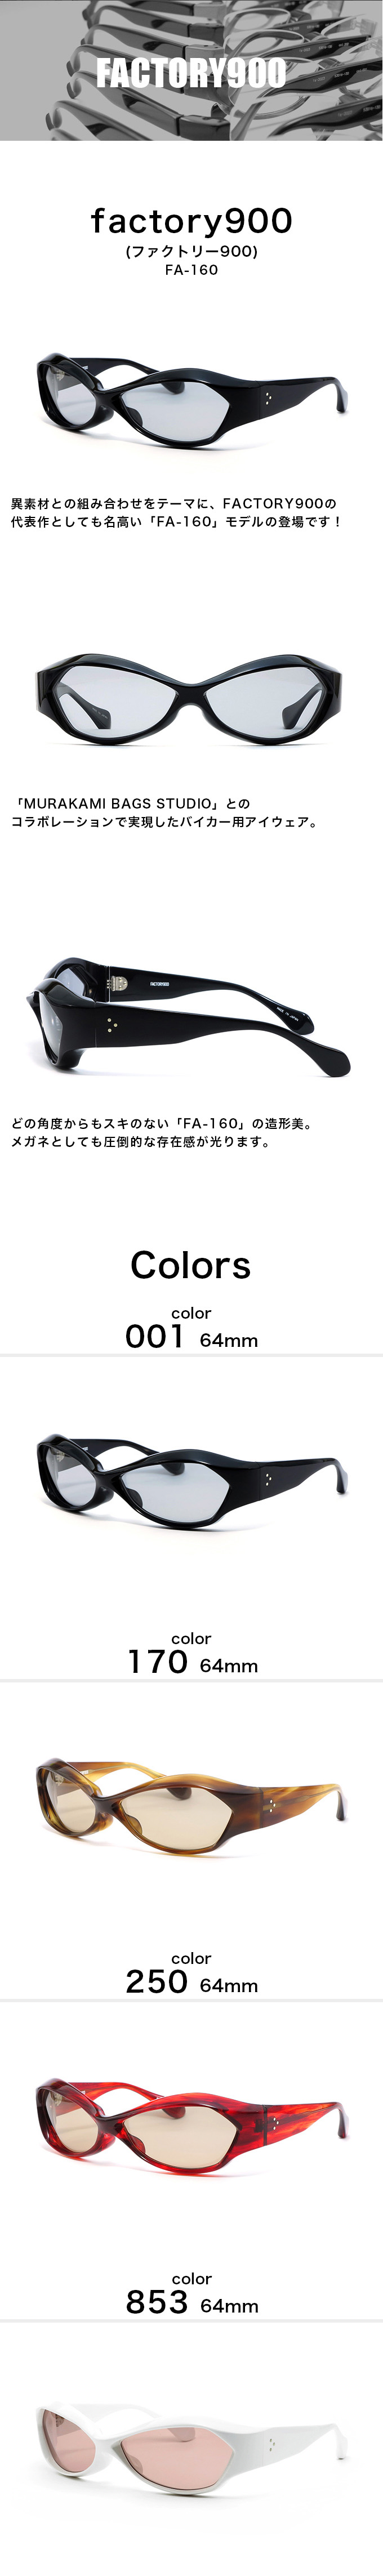 factory900（ファクトリー900）fa-160 64mm 4カラー 001 170 250 853メンズ メガネ 眼鏡  サングラスfactory900 fa-160【ありがとう】【店頭受取対応商品】